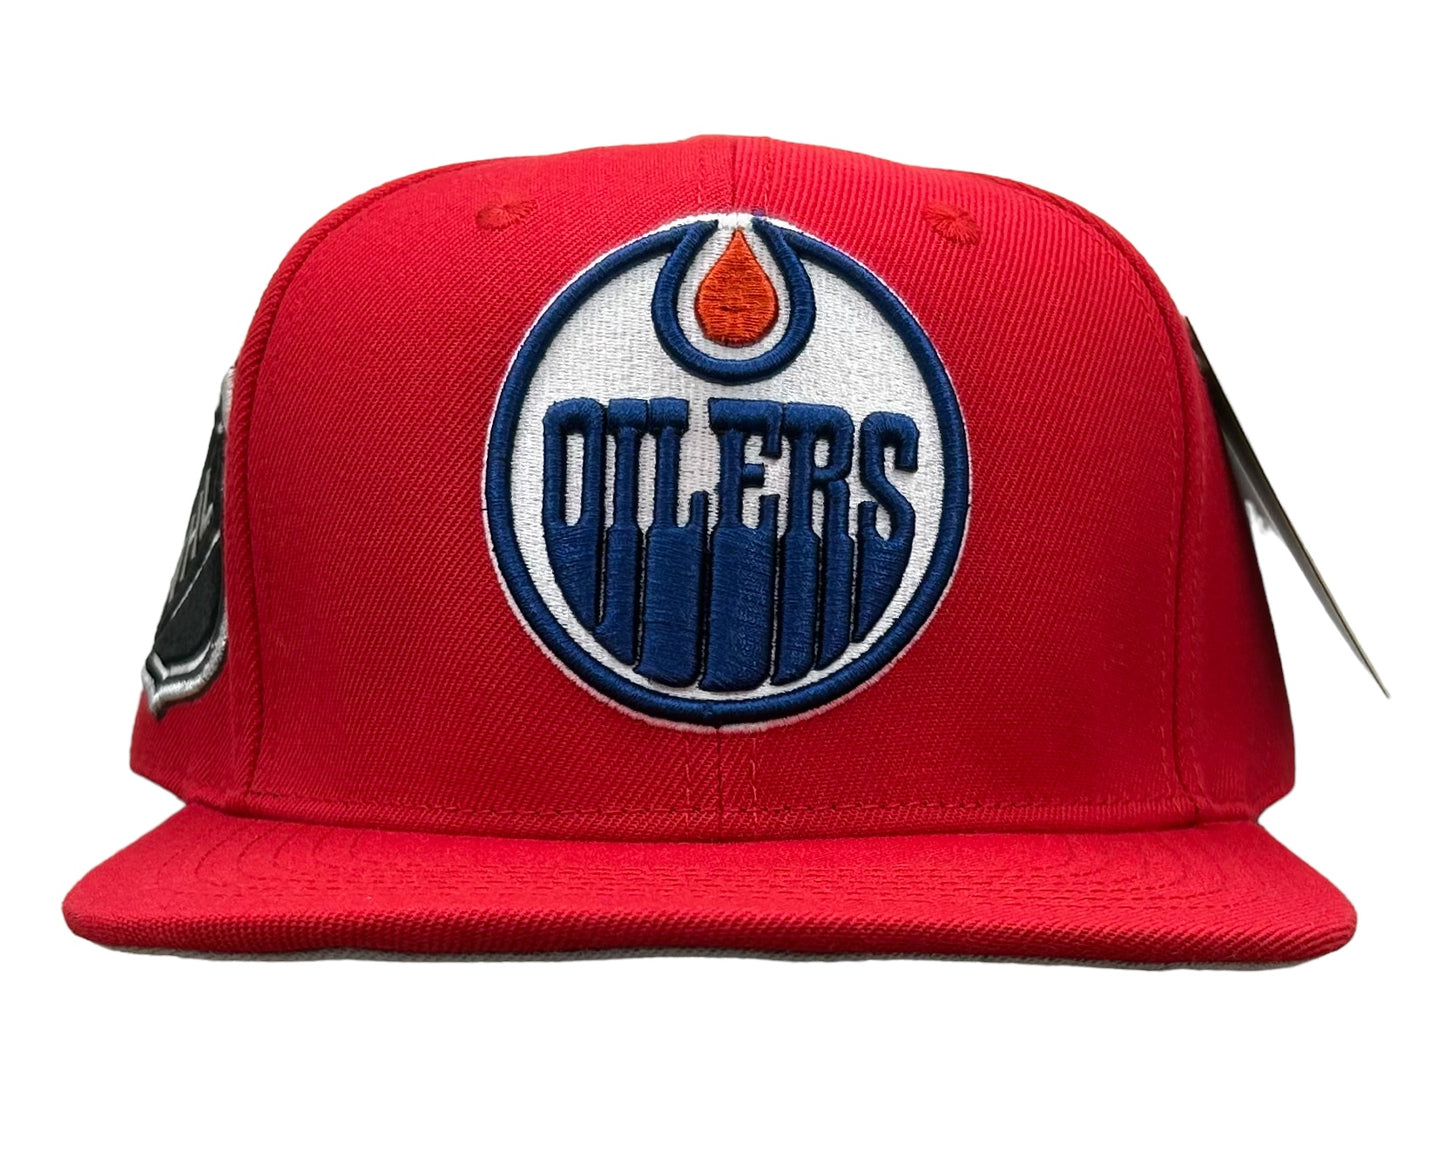 NEW Edmonton Oilers Red Wool SnapBack Hat NHL Official Hockey Cap Flat Brim